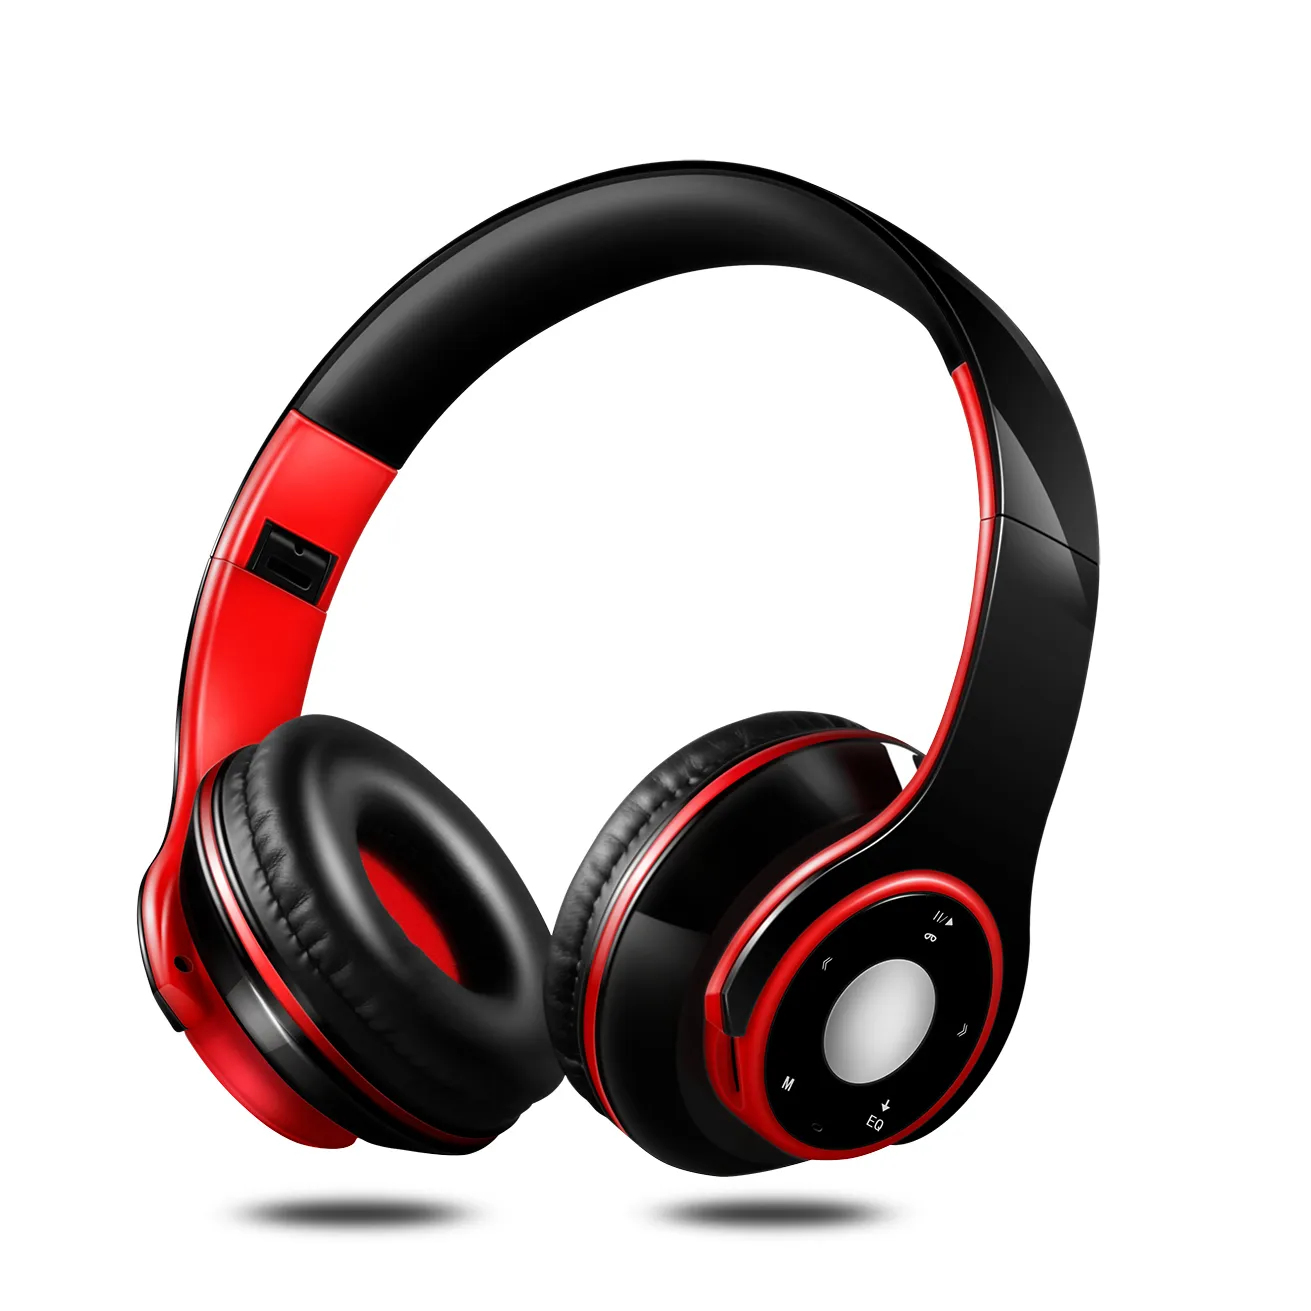 Nowe słuchawki bezprzewodowe słuchawki słuchawkowe Bluetooth słuchawki z mikrofonem Mikrofonowe słuchawki do słuchawki na telefon komórkowy Odtwarzacz MP3